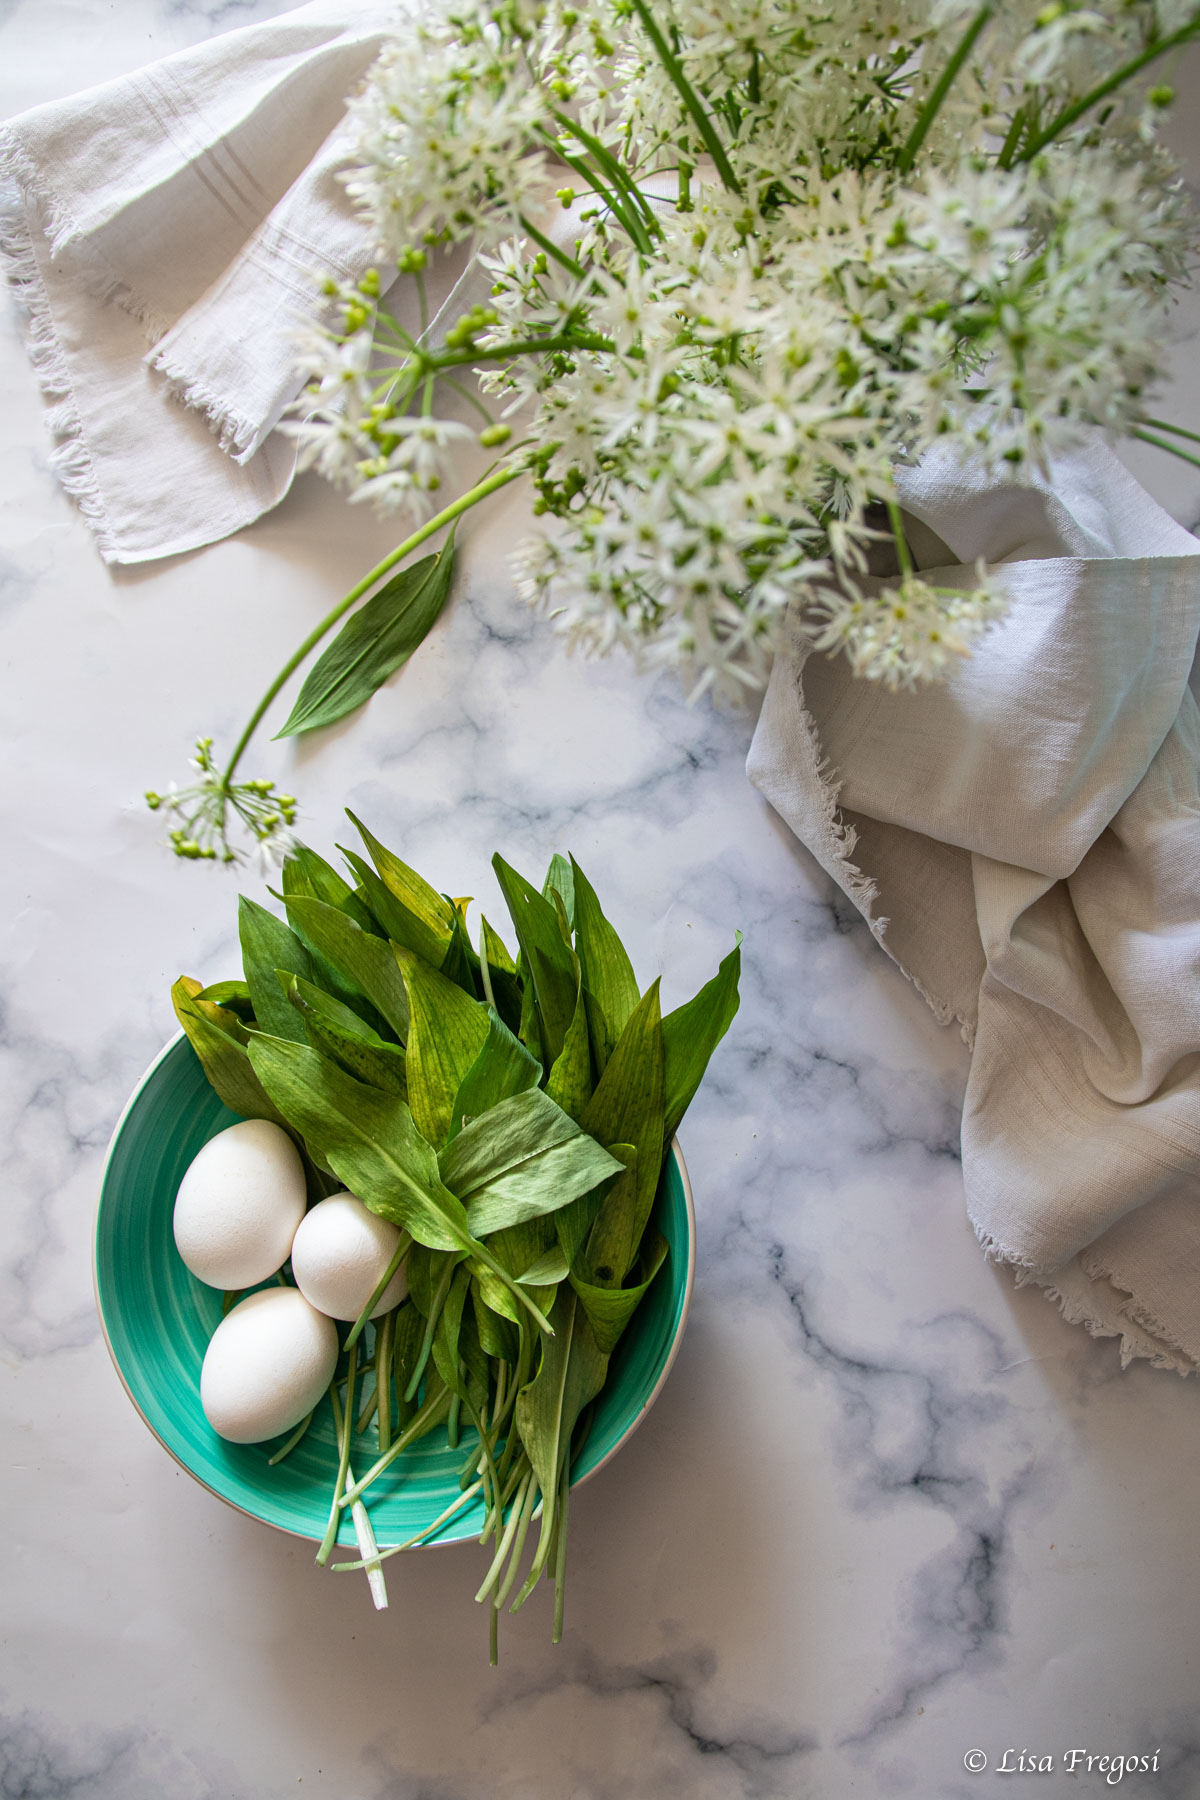 pasta all'uovo verde: le tagliatelle di aglio orsino fatte in casa